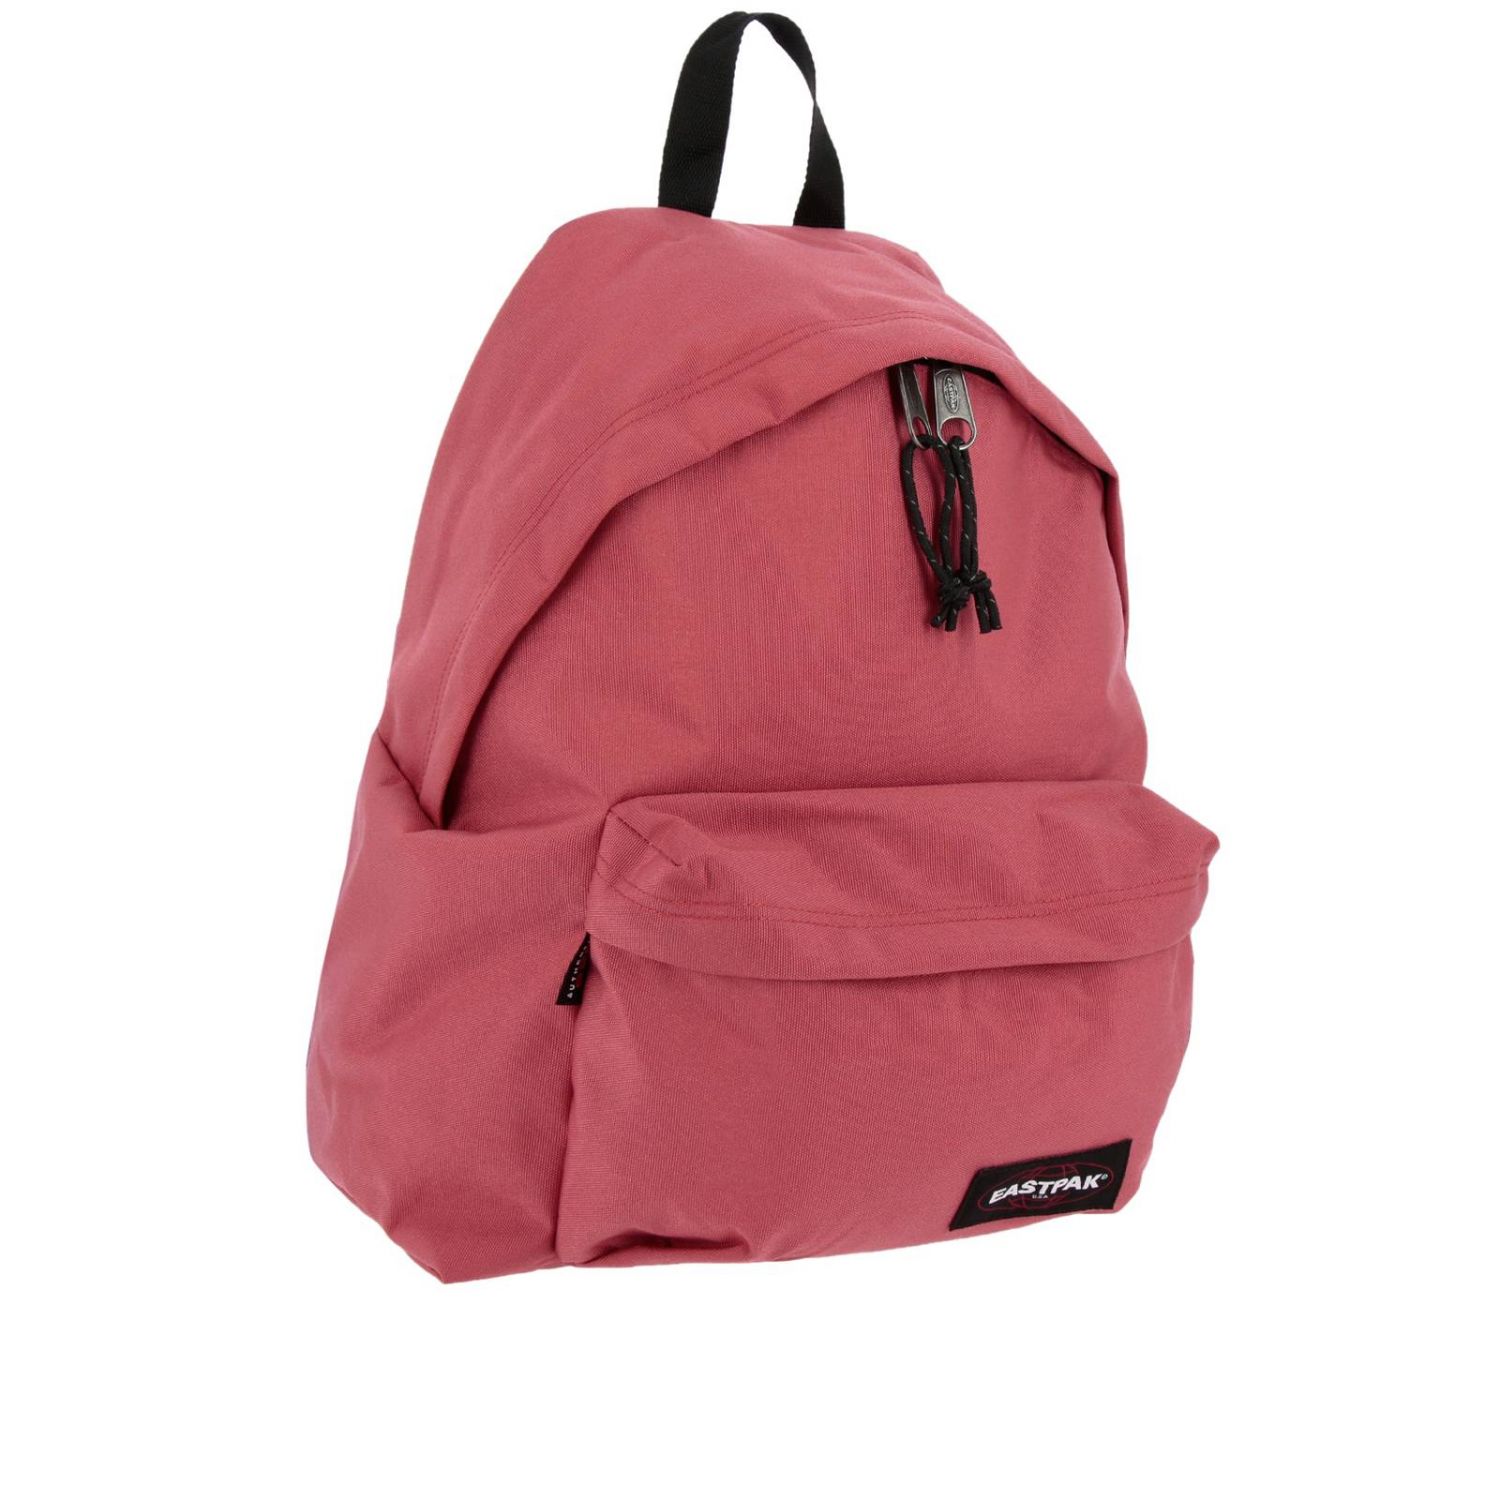 Eastpak Outlet: Bags men | Backpack Eastpak Men Pink | Backpack Eastpak ...